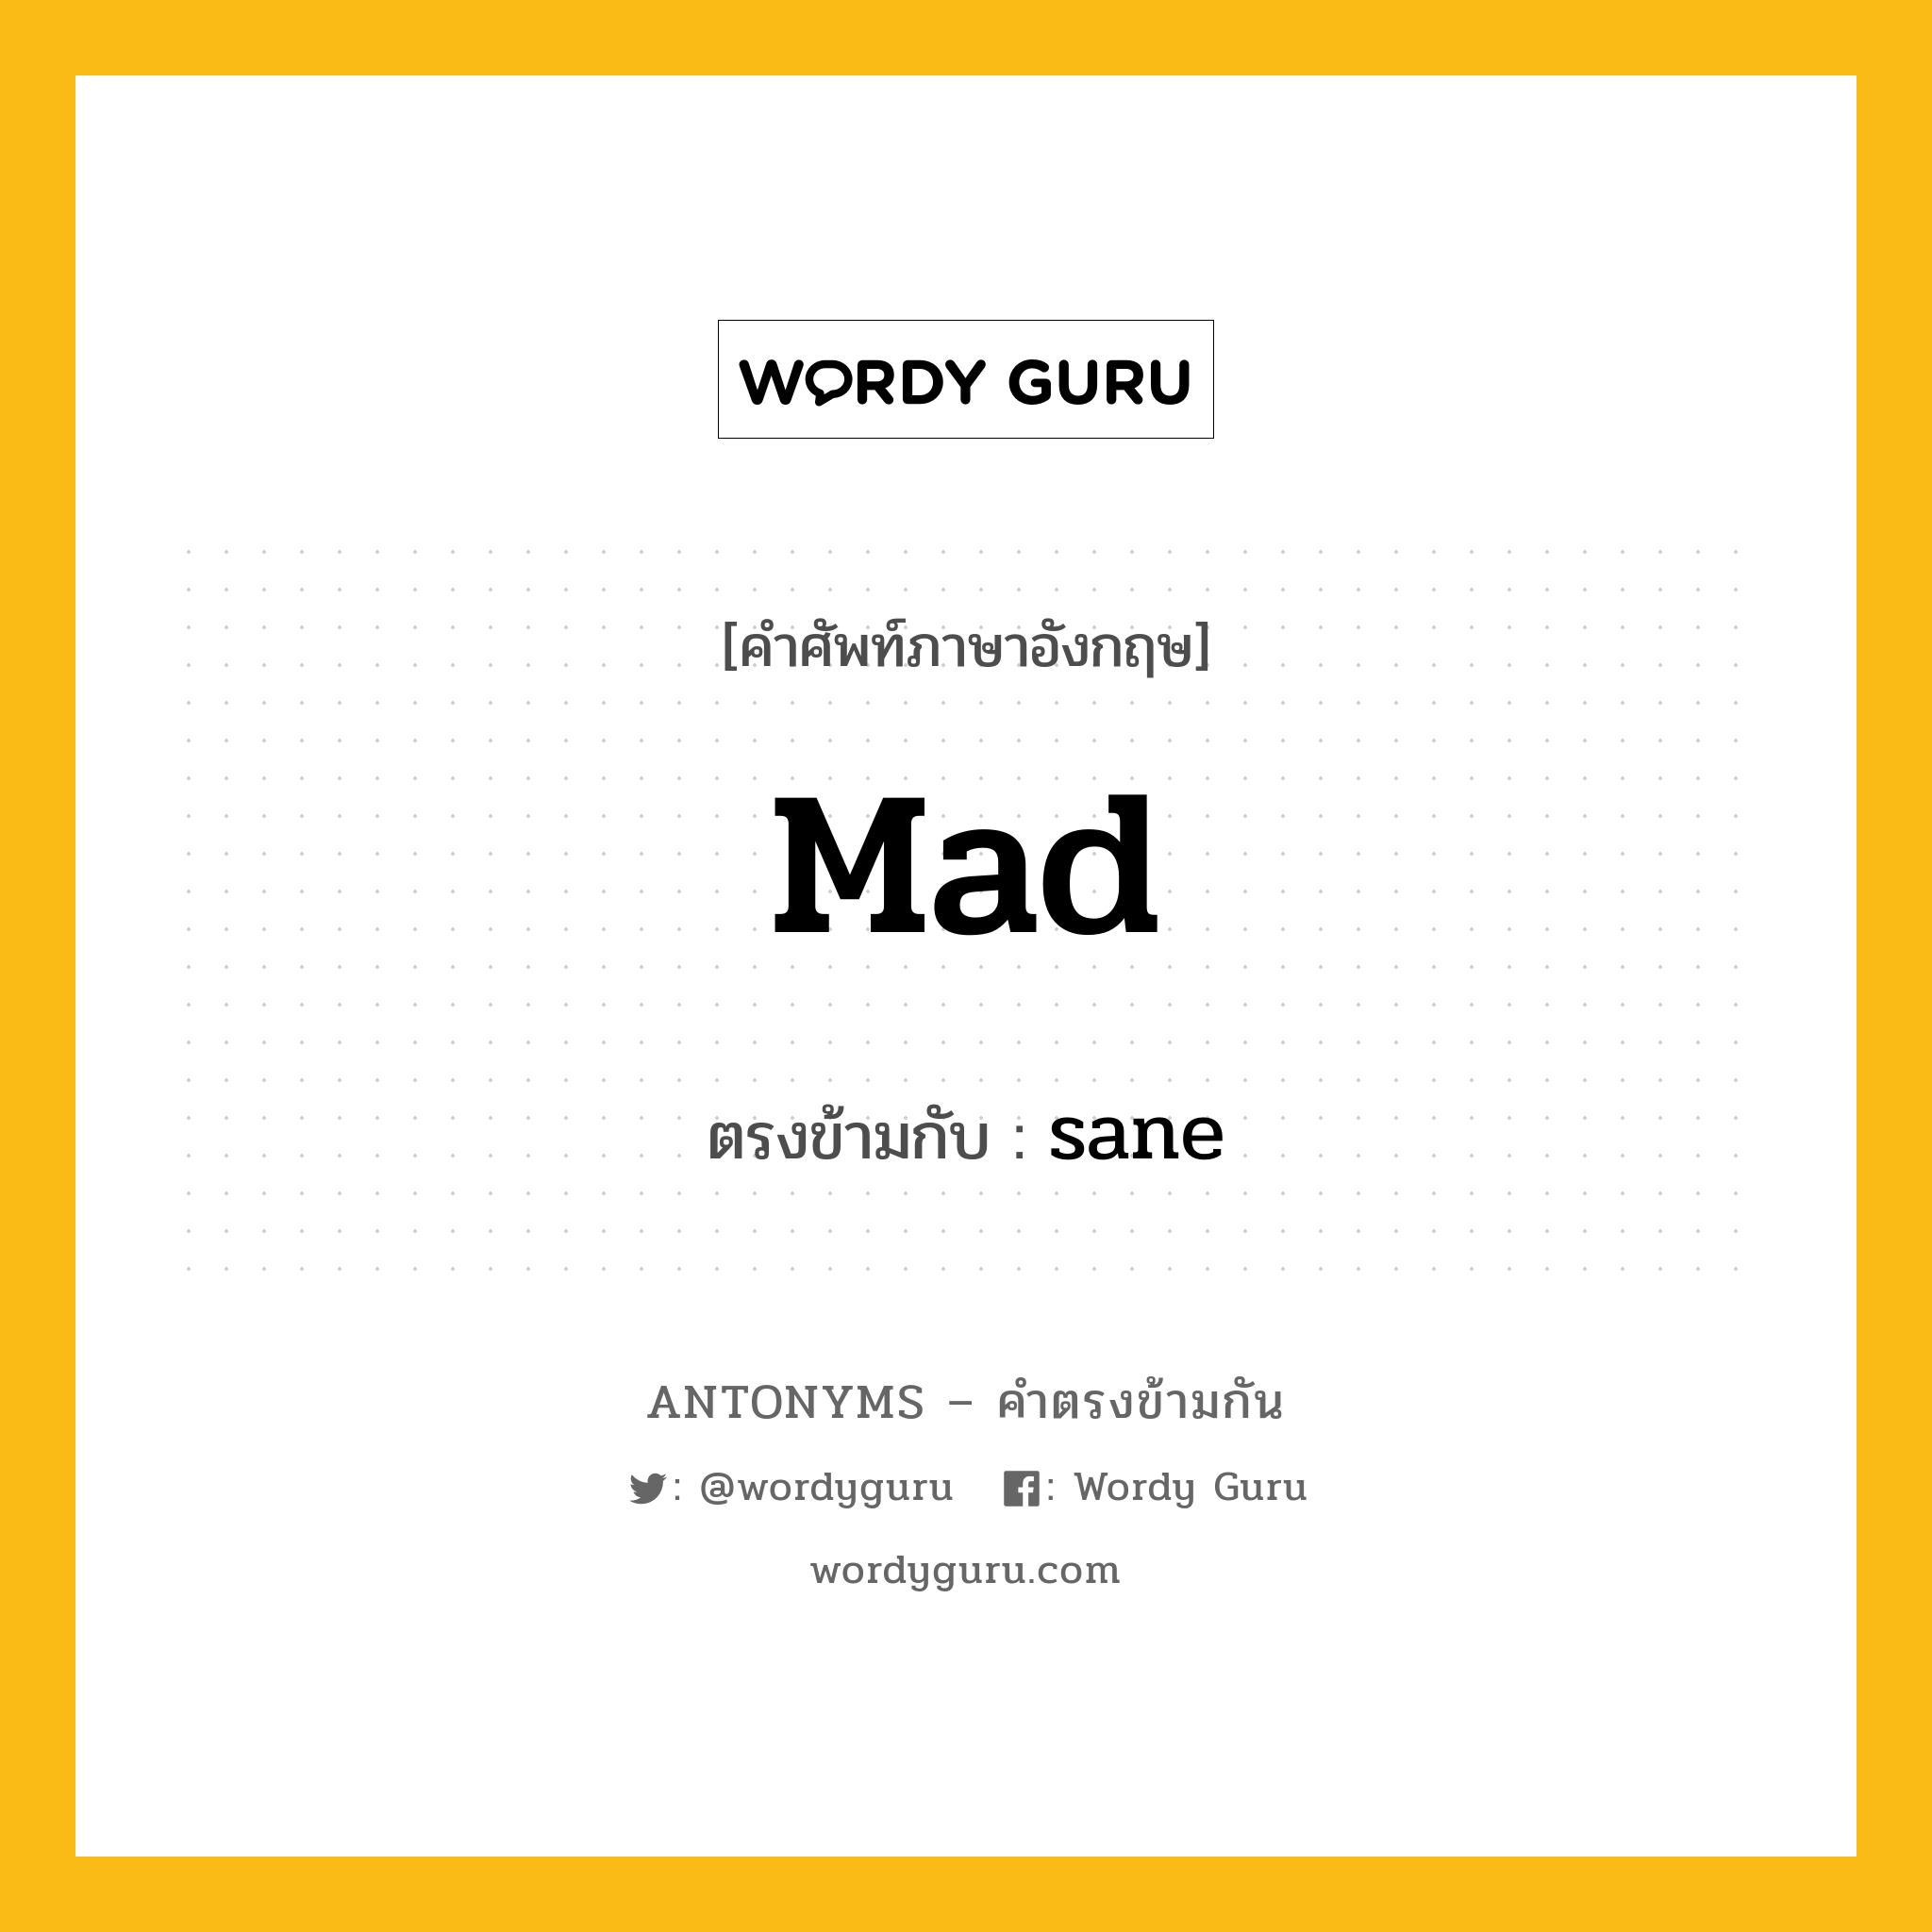 mad เป็นคำตรงข้ามกับคำไหนบ้าง?, คำศัพท์ภาษาอังกฤษ mad ตรงข้ามกับ sane หมวด sane